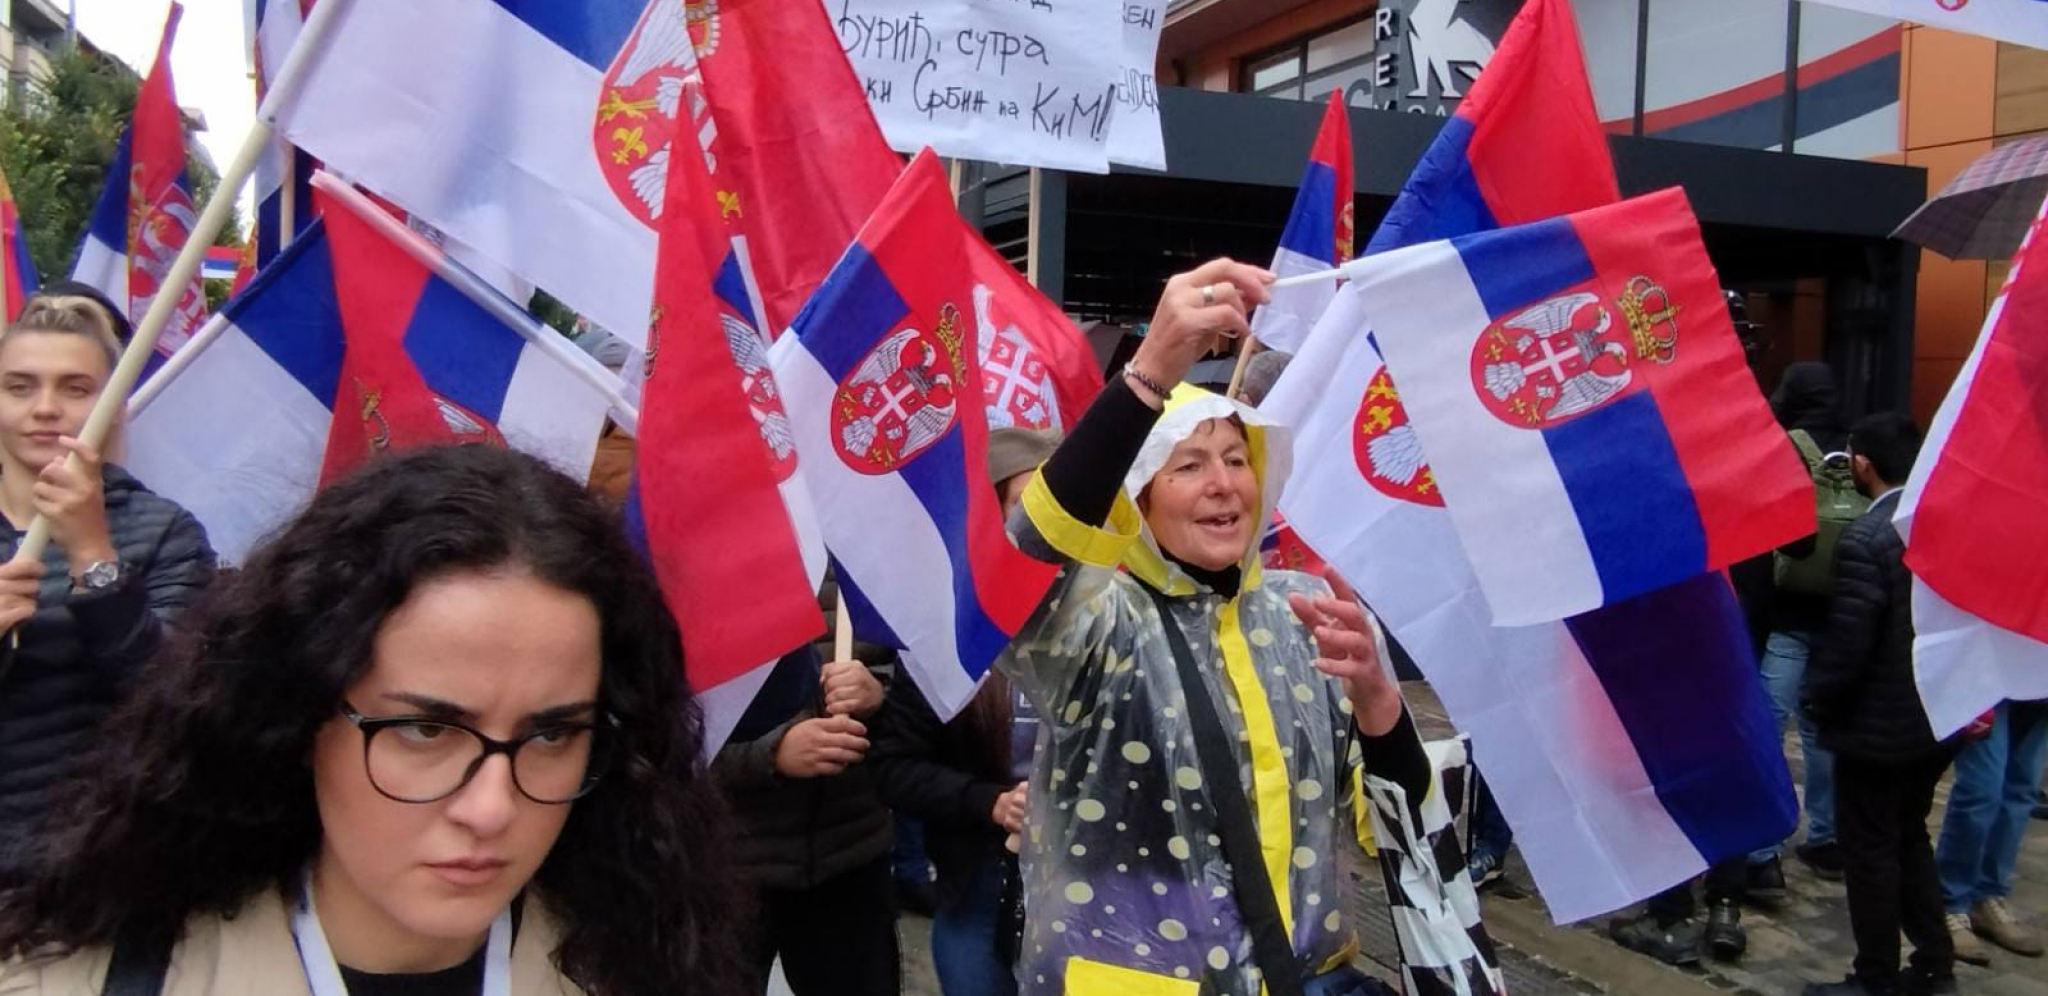 "SVE ŠTO RADI PRIŠTINA JE ILEGALNO" Vučić govorio o eventualnim protestima Srba sa Kosmeta